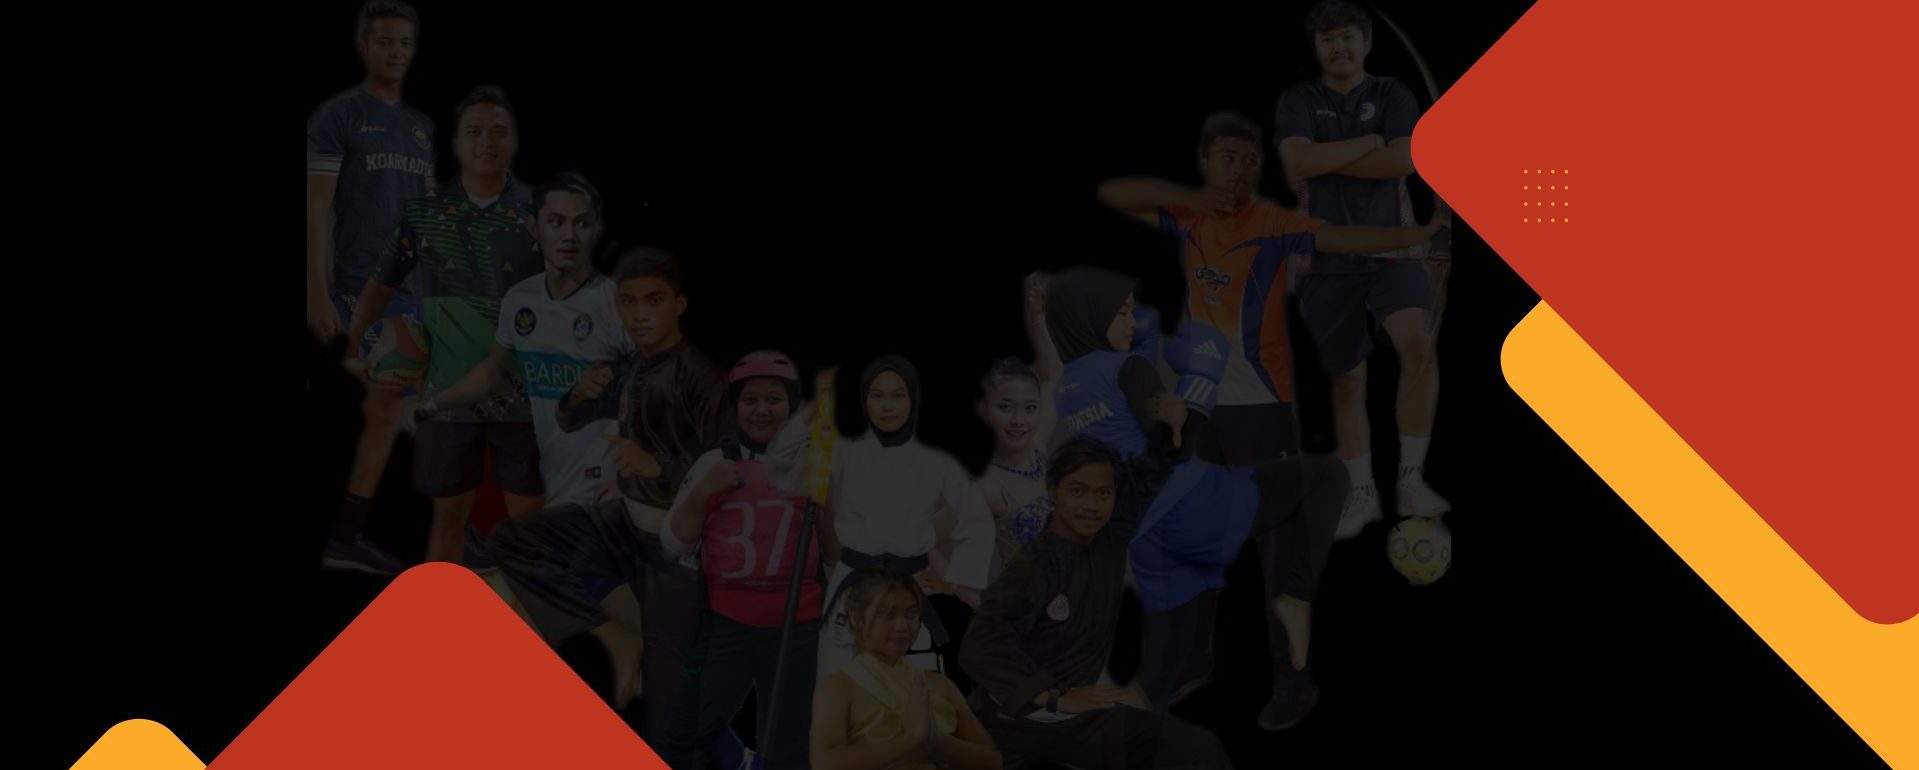 Pilmapres 2020,Cerminkan Mahasiswa Berprestasi yang Berkontribusi bagi Bangsa